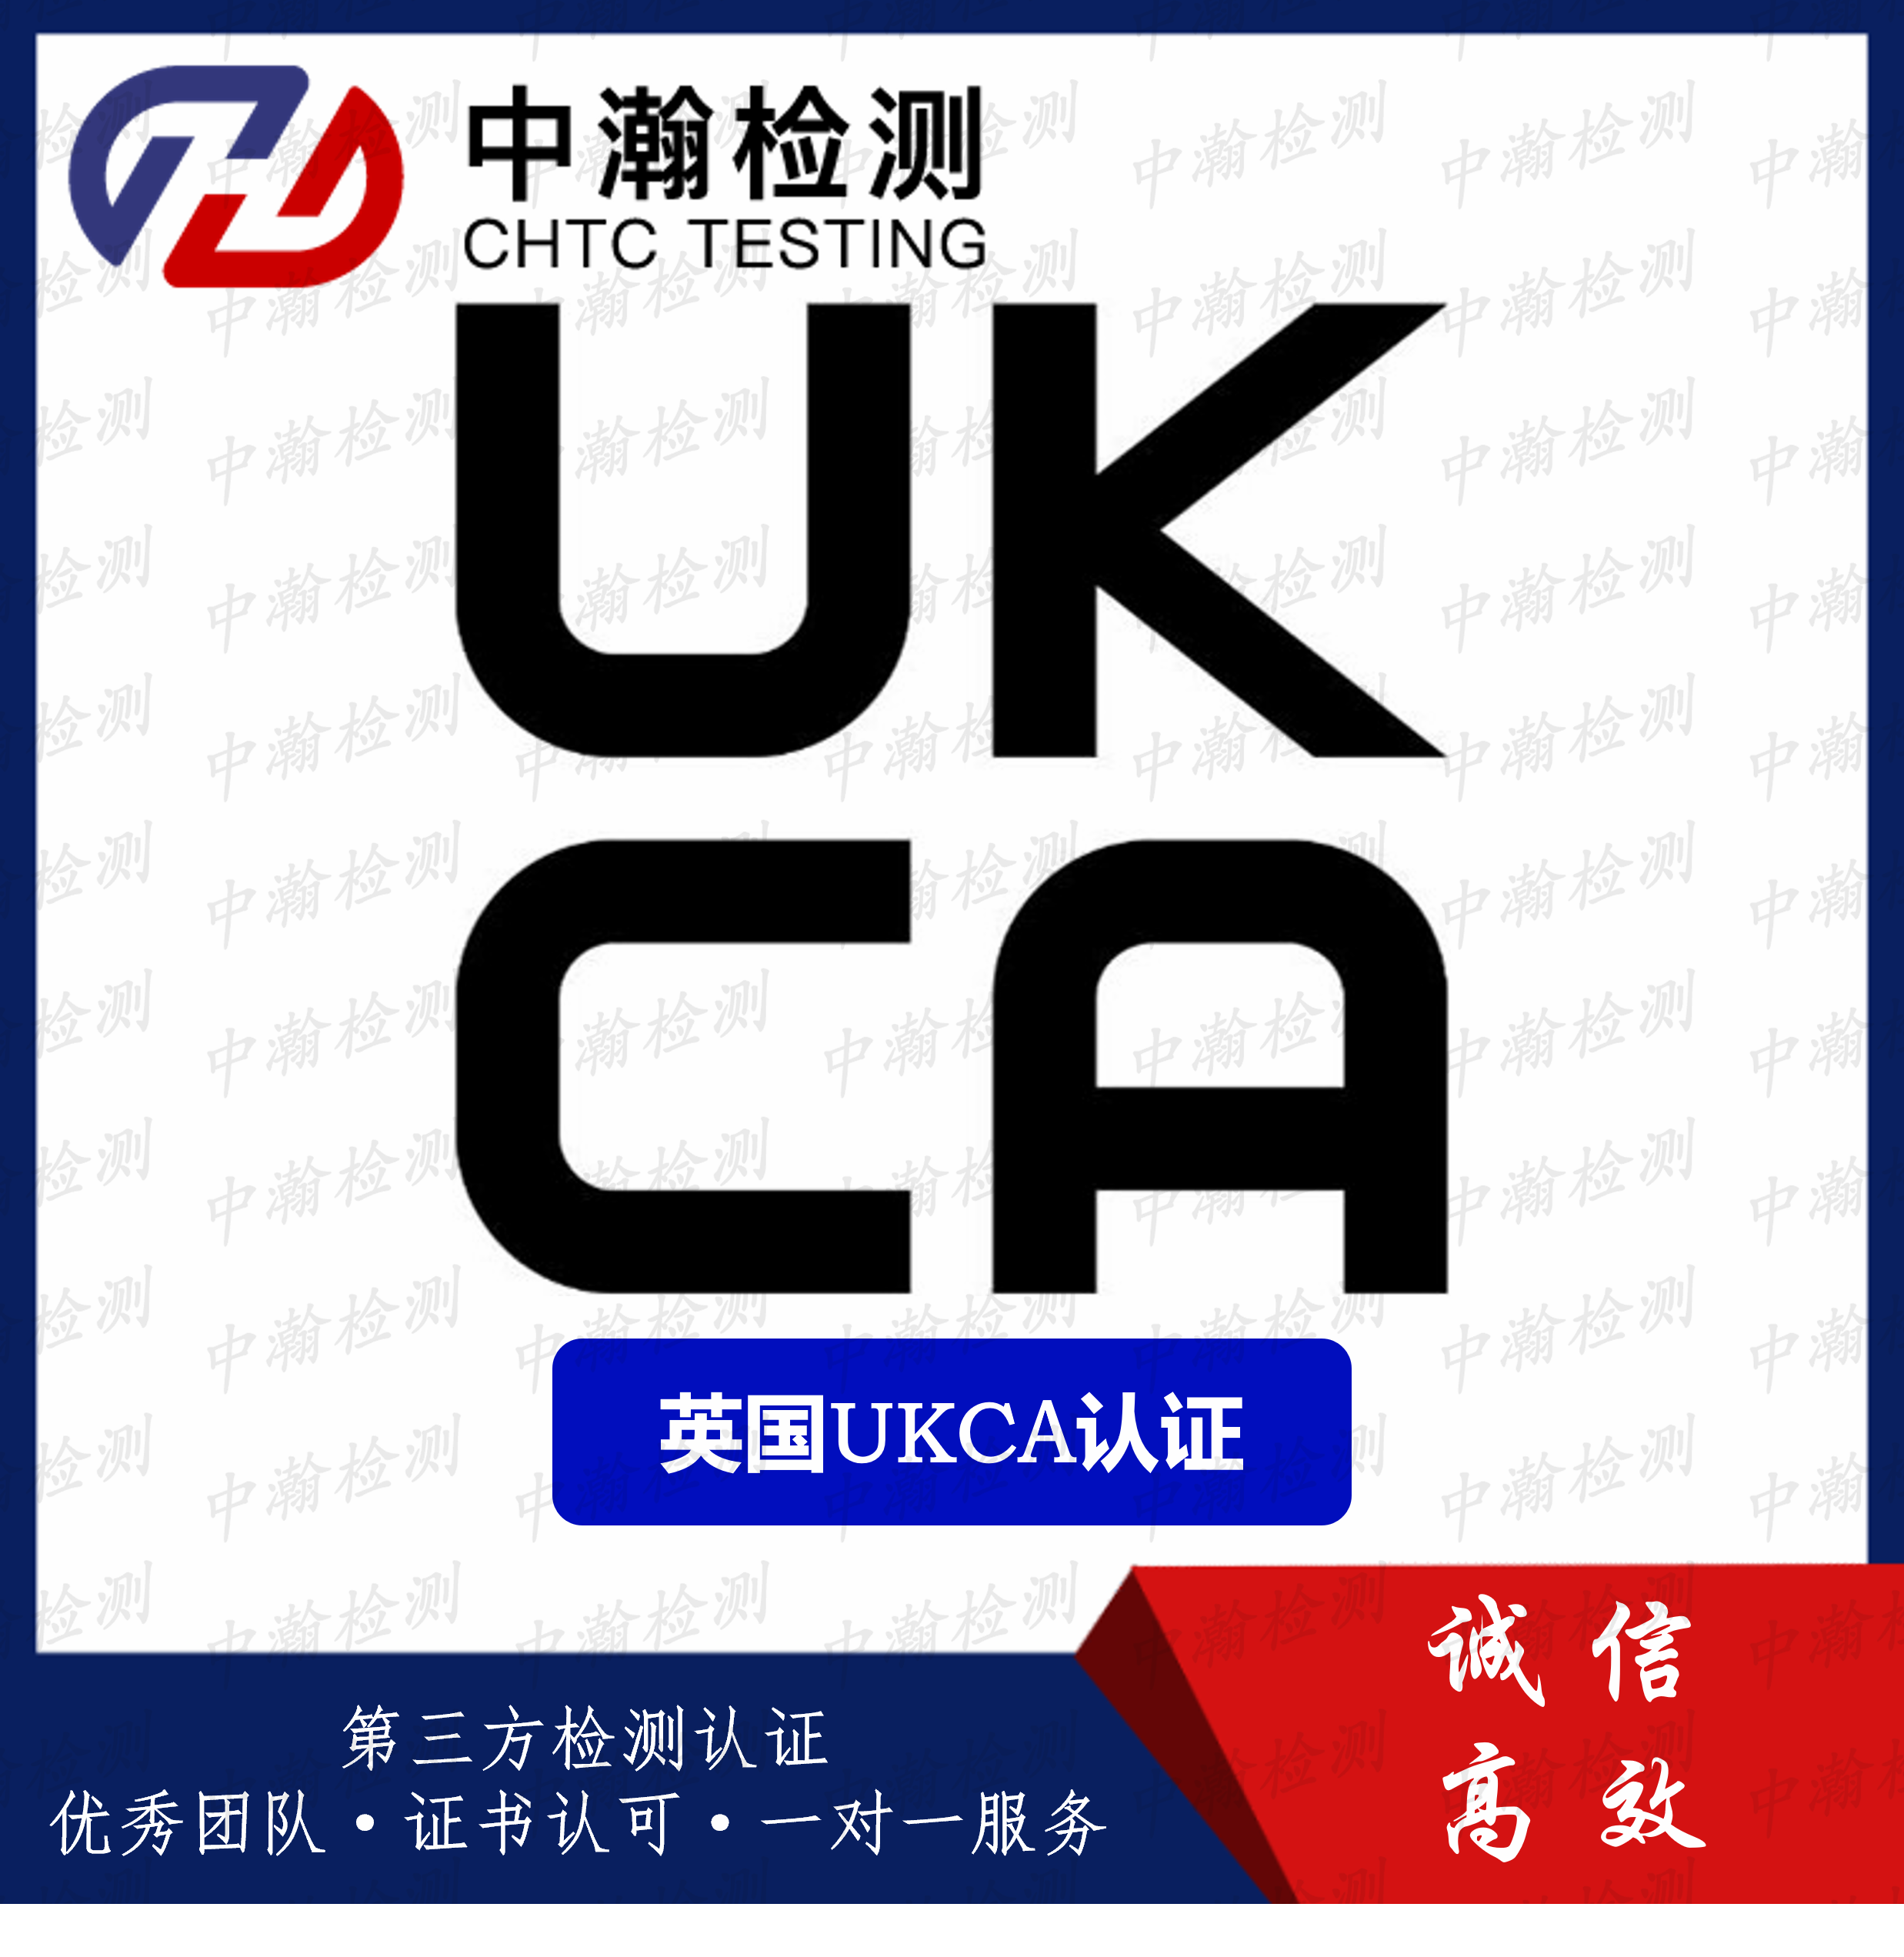 做一个UKCA认证证书模板